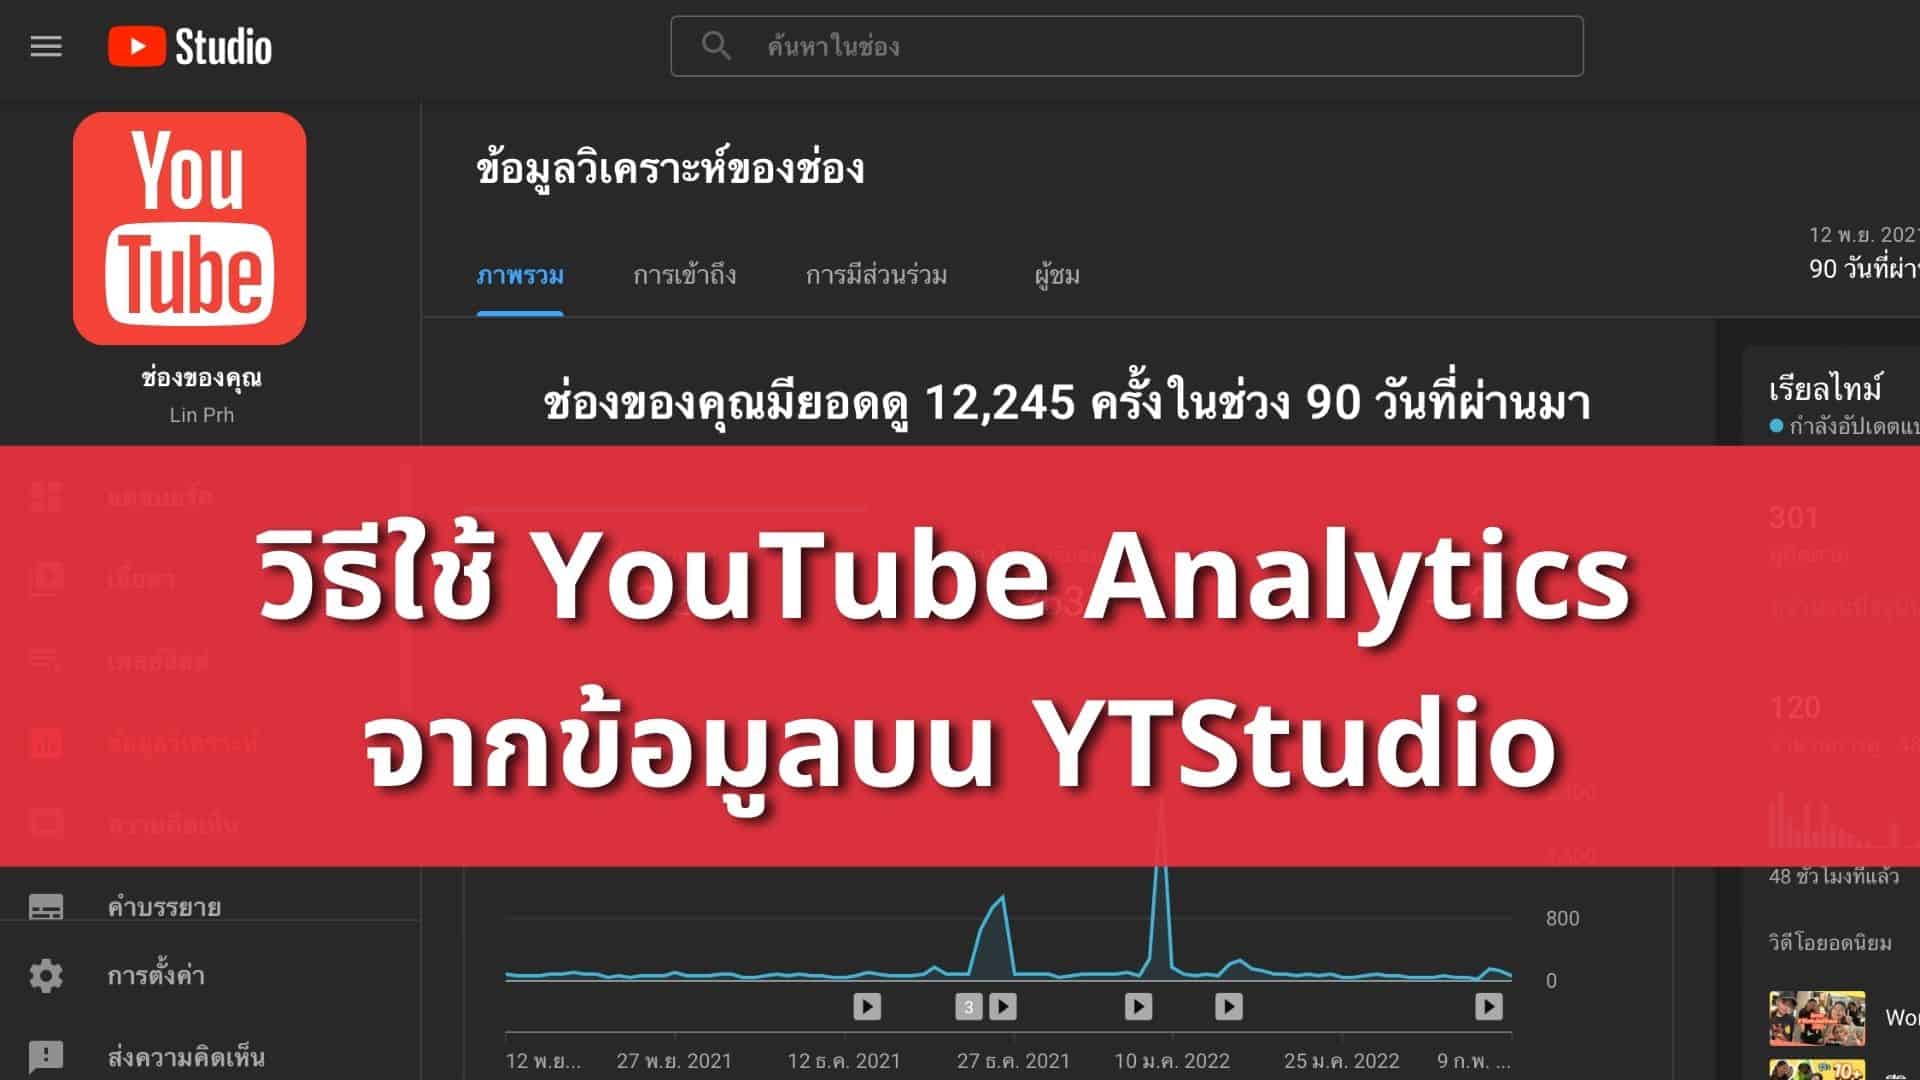 วิธีใช้ Youtube Analytics 2022 จากข้อมูลบน Ytstudio